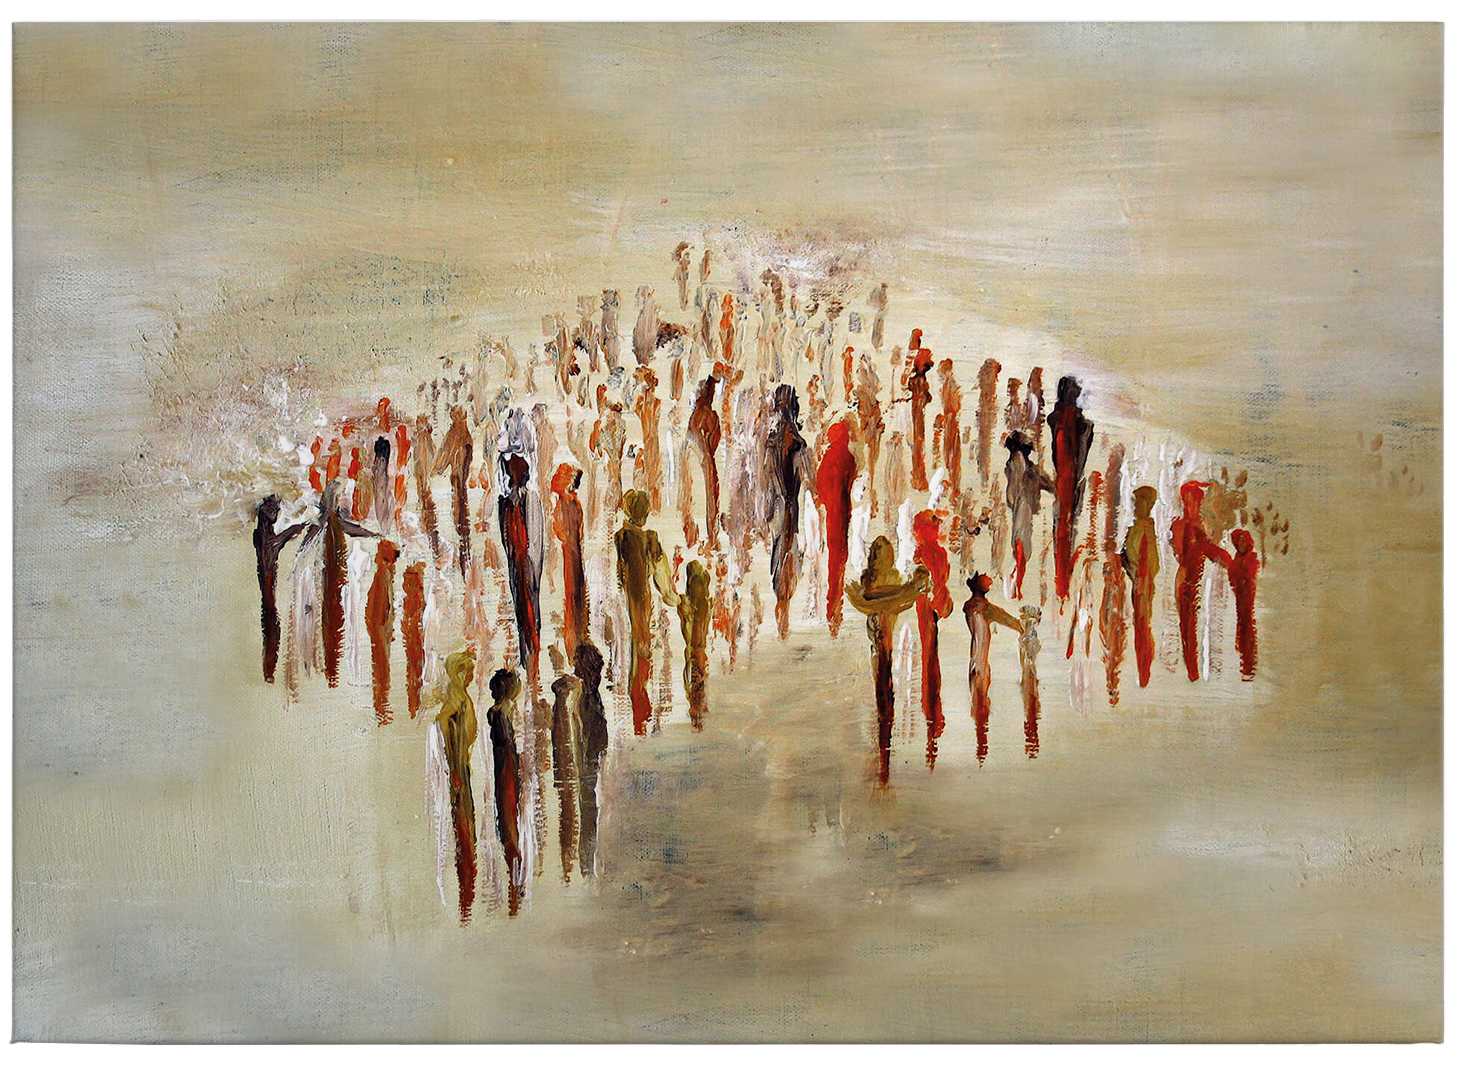             Cuadro en lienzo Art by Melz "People 02" - 0,70 m x 0,50 m
        